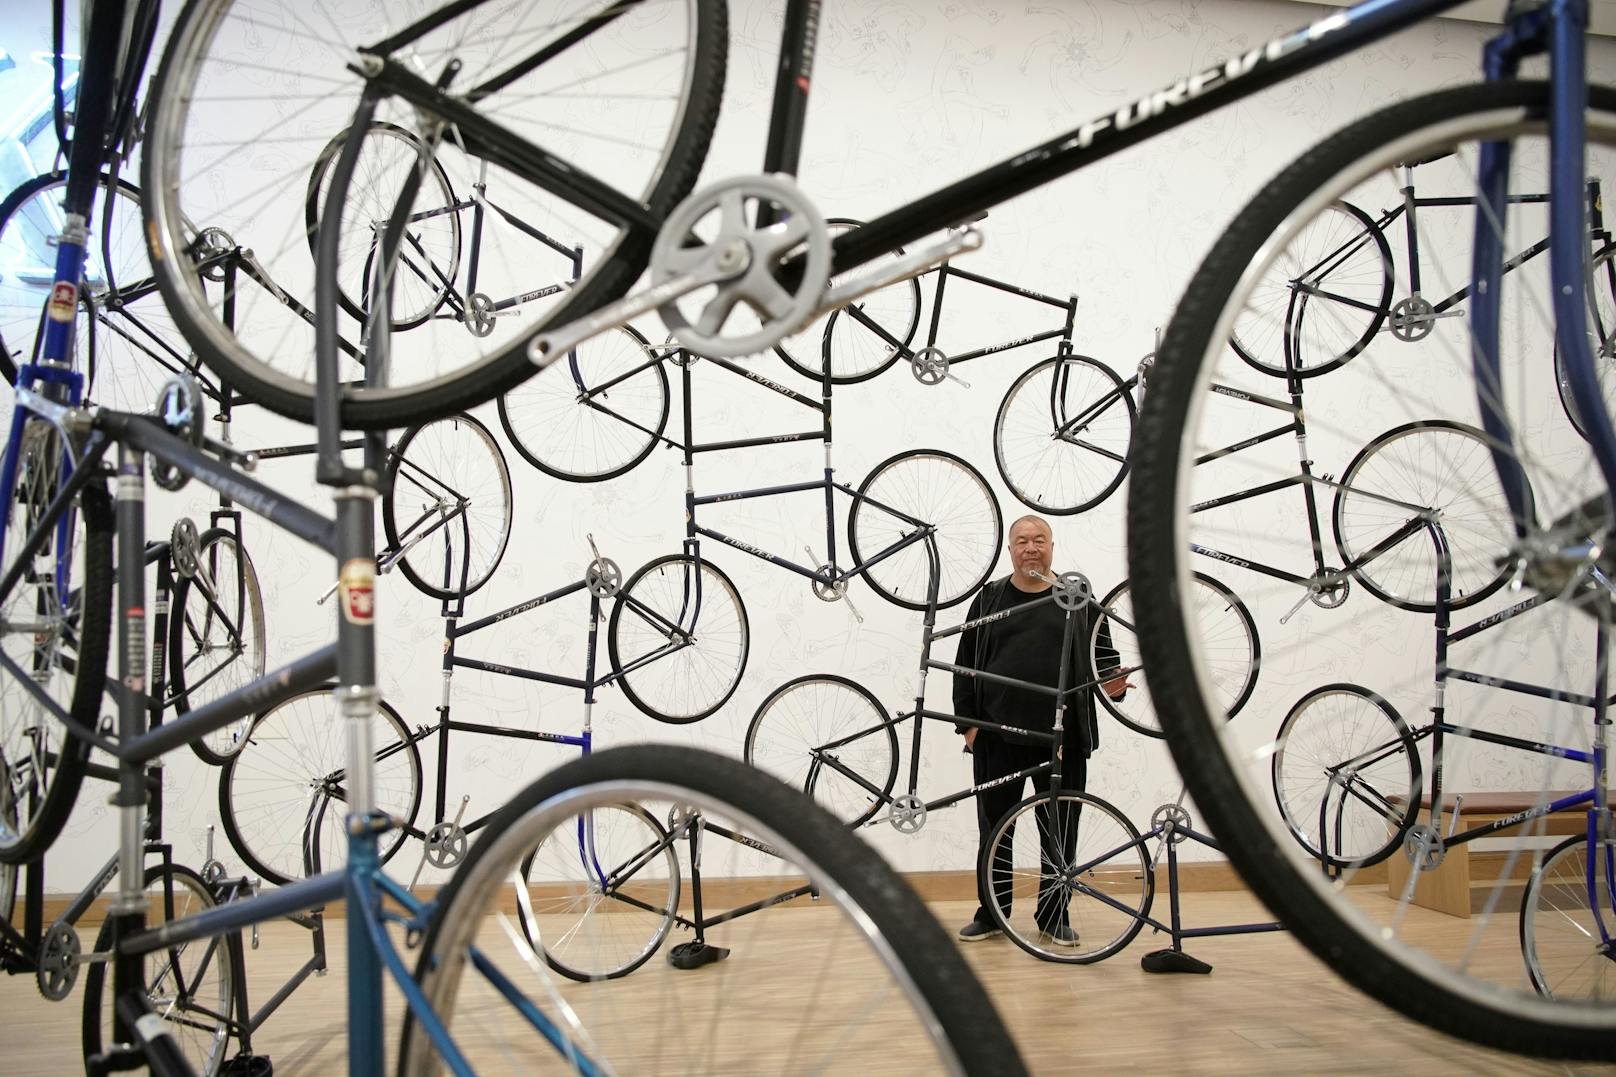 Ai Weiwei hinter seiner Installation "Forever Bicycles, 2003".&nbsp;Ai montiert die Fahrräder so aneinander, dass sie nicht mehr funktionstüchtig sind, ohne Lenker, Pedale und Ketten, teils ohne Sattel. Er spielt damit auf die chinesische Bevölkerung an, auf deren Synchronisierung und Uniformierung, deren Zusammenspiel als Kollektiv, das jedoch dem Einzelnen kaum Bewegungsfreiheit ermöglicht.